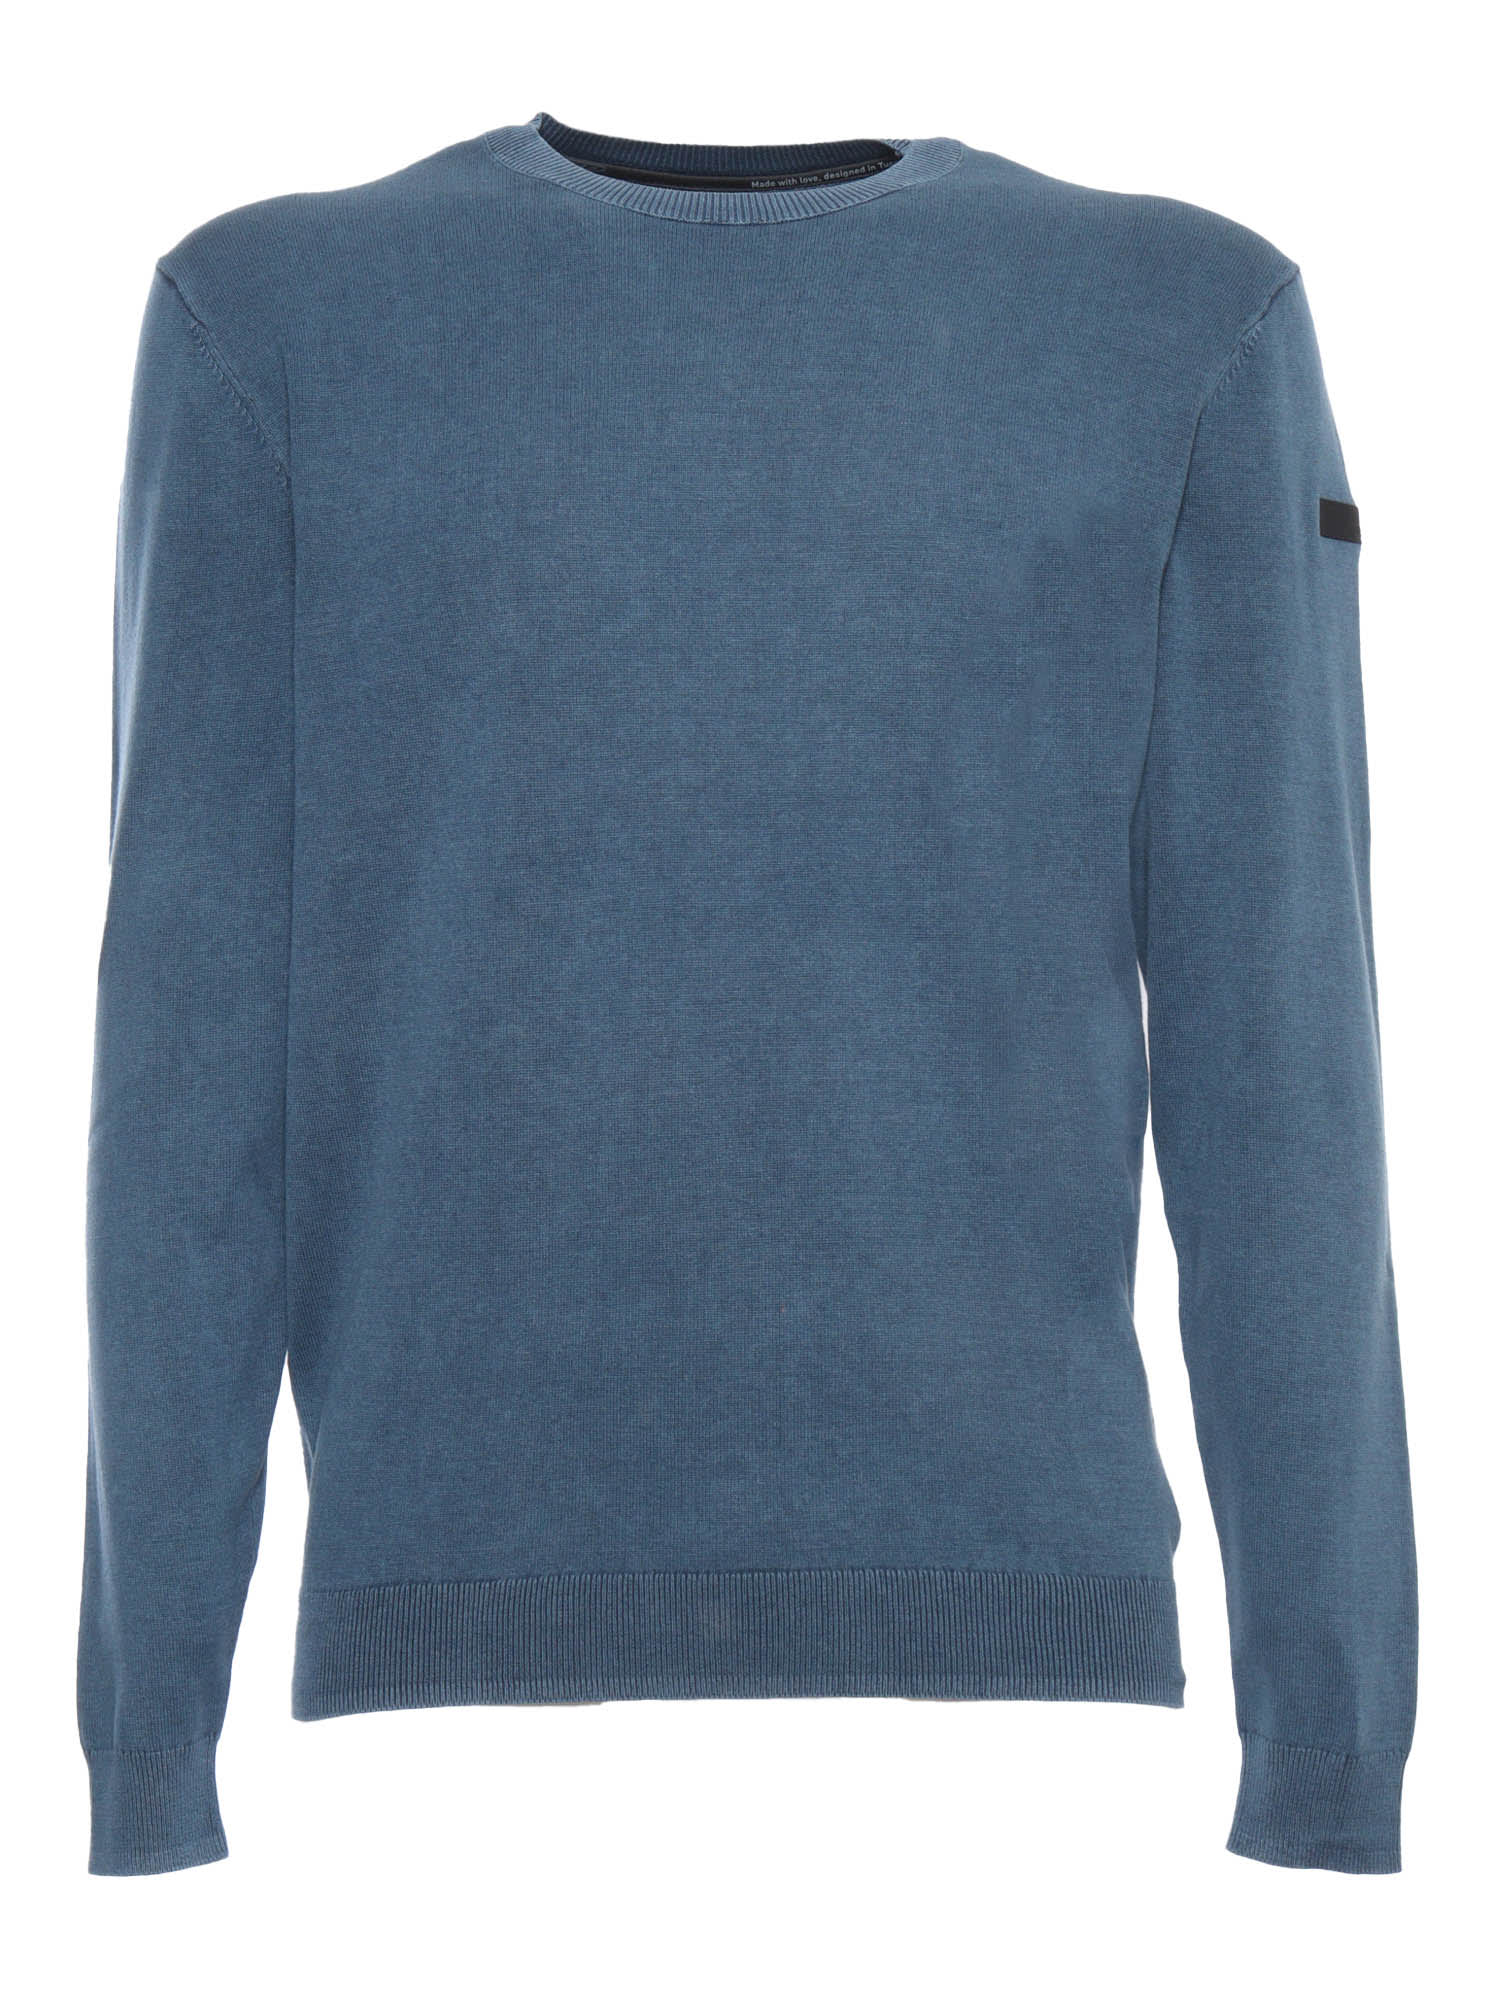 Shop Rrd - Roberto Ricci Design Blue Techno Sweater